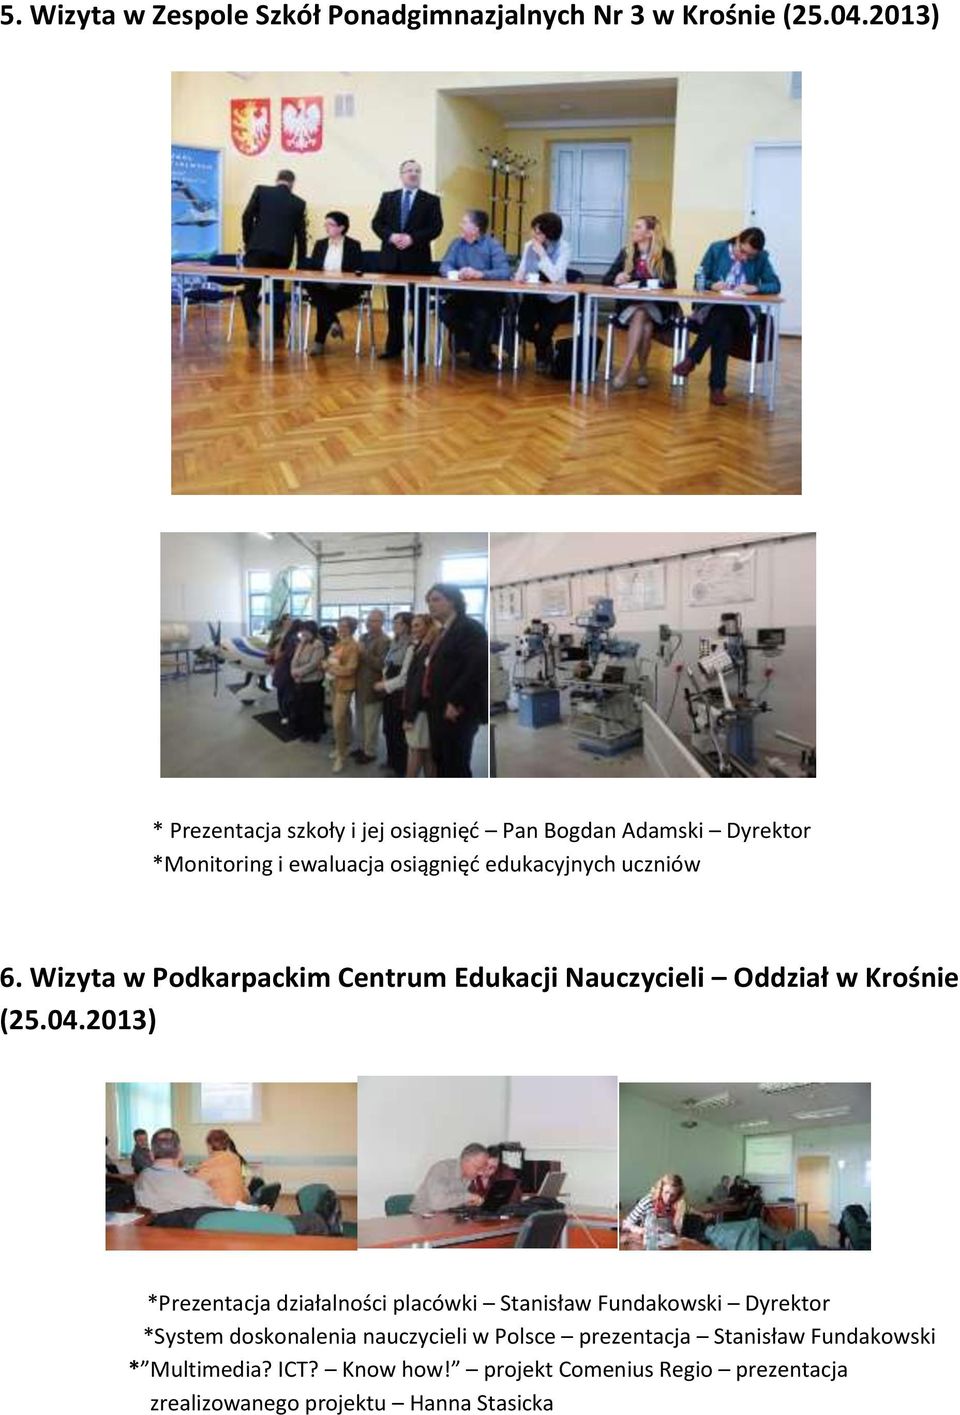 Wizyta w Podkarpackim Centrum Edukacji Nauczycieli Oddział w Krośnie (25.04.